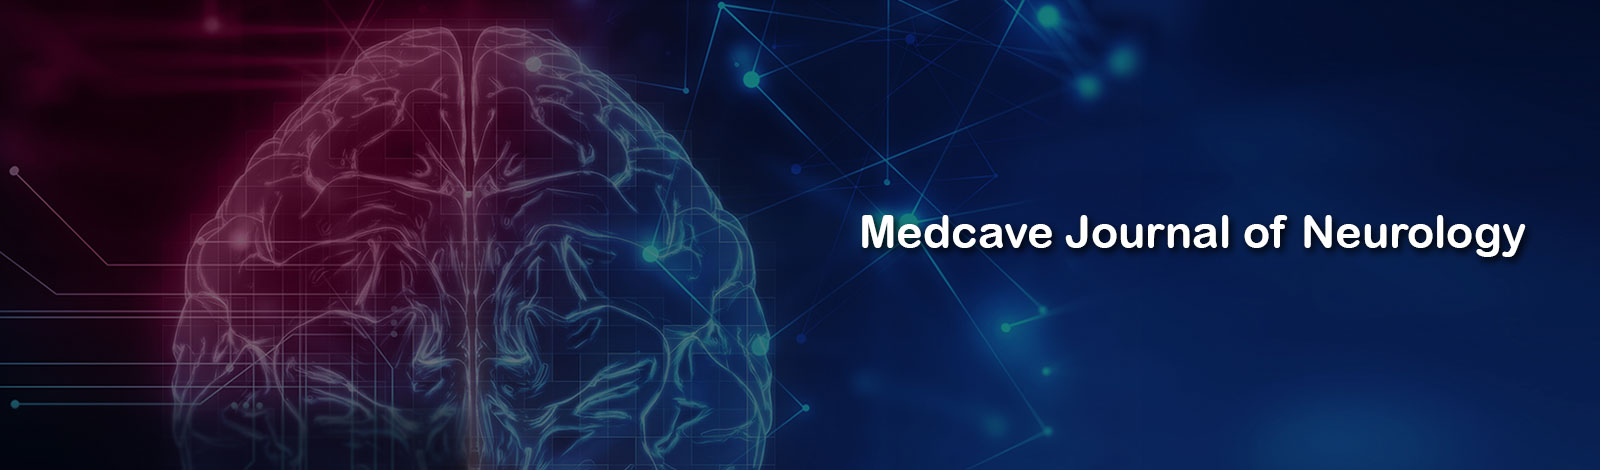 Medcave Journal of Neurology